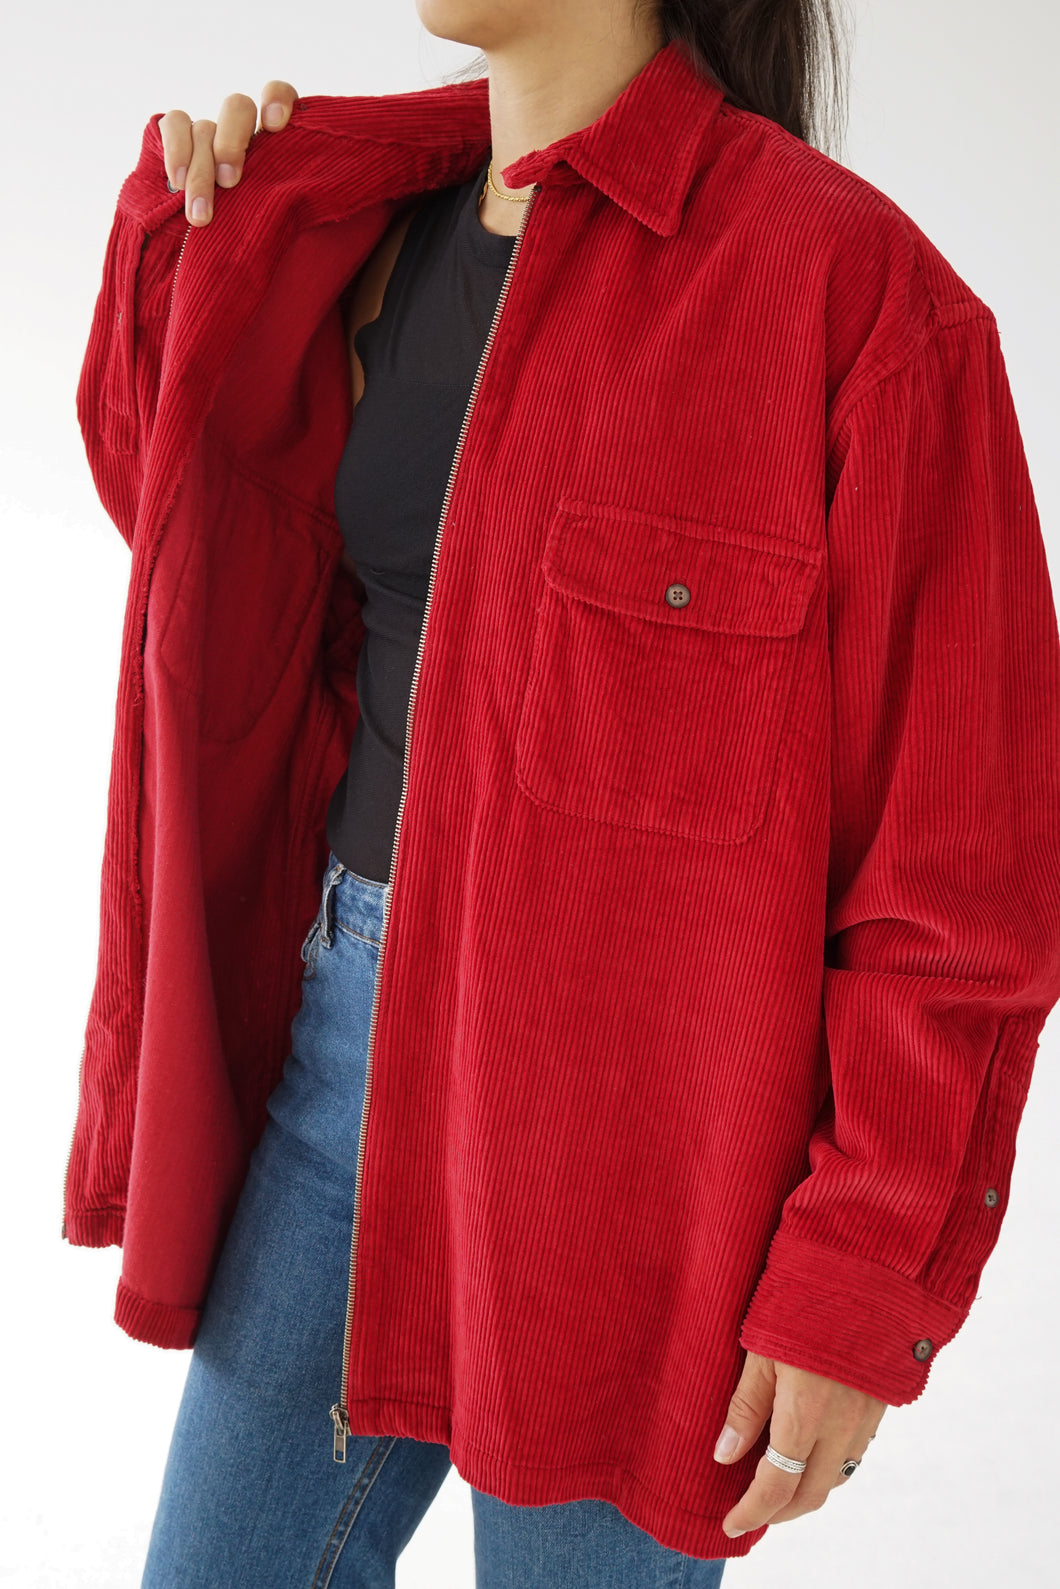 Jacket en corduroy rouge vintage Britches pour homme taille L